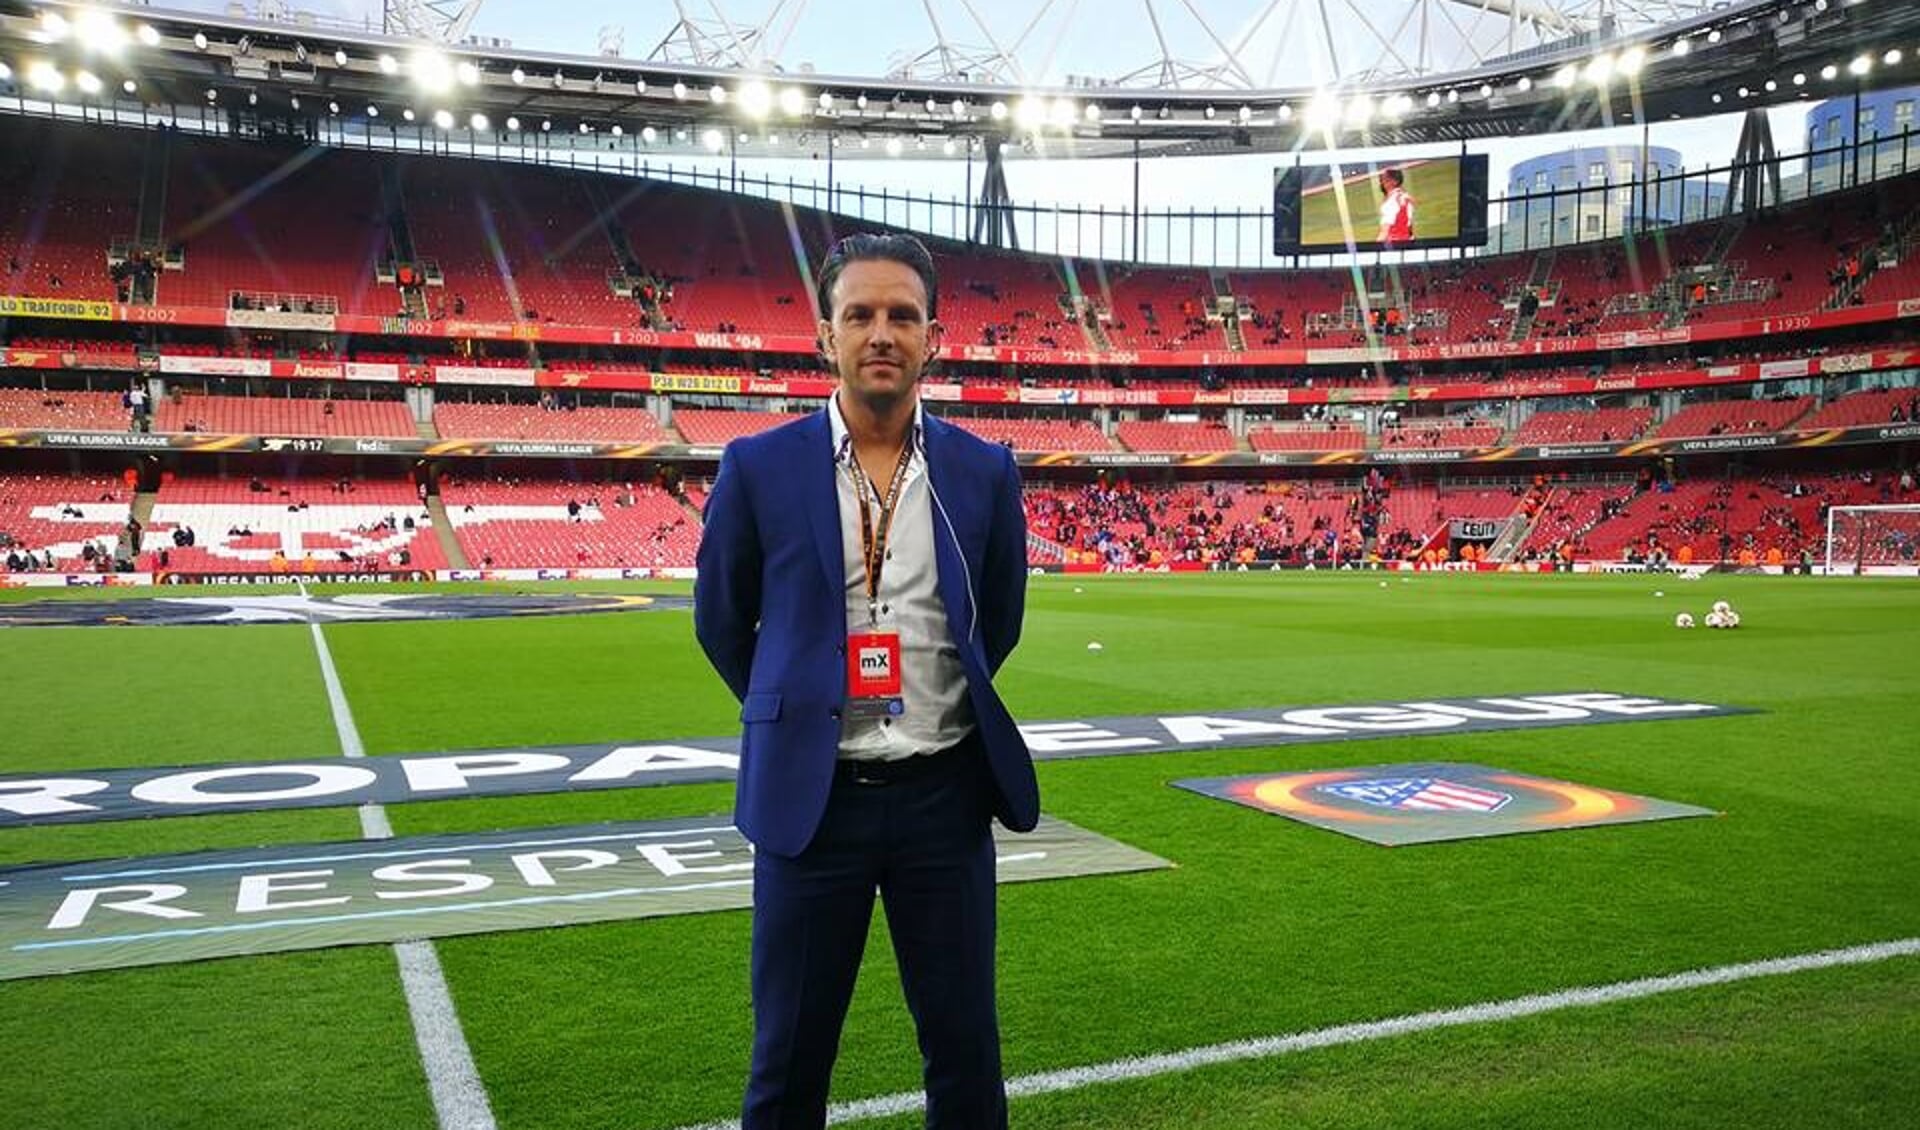 Daniel Agus uit Huissen vlak voor de wedstrijd van ‘zijn’ Atletico Madrid bij Arsenal, halve finale Europa League in april 2018.